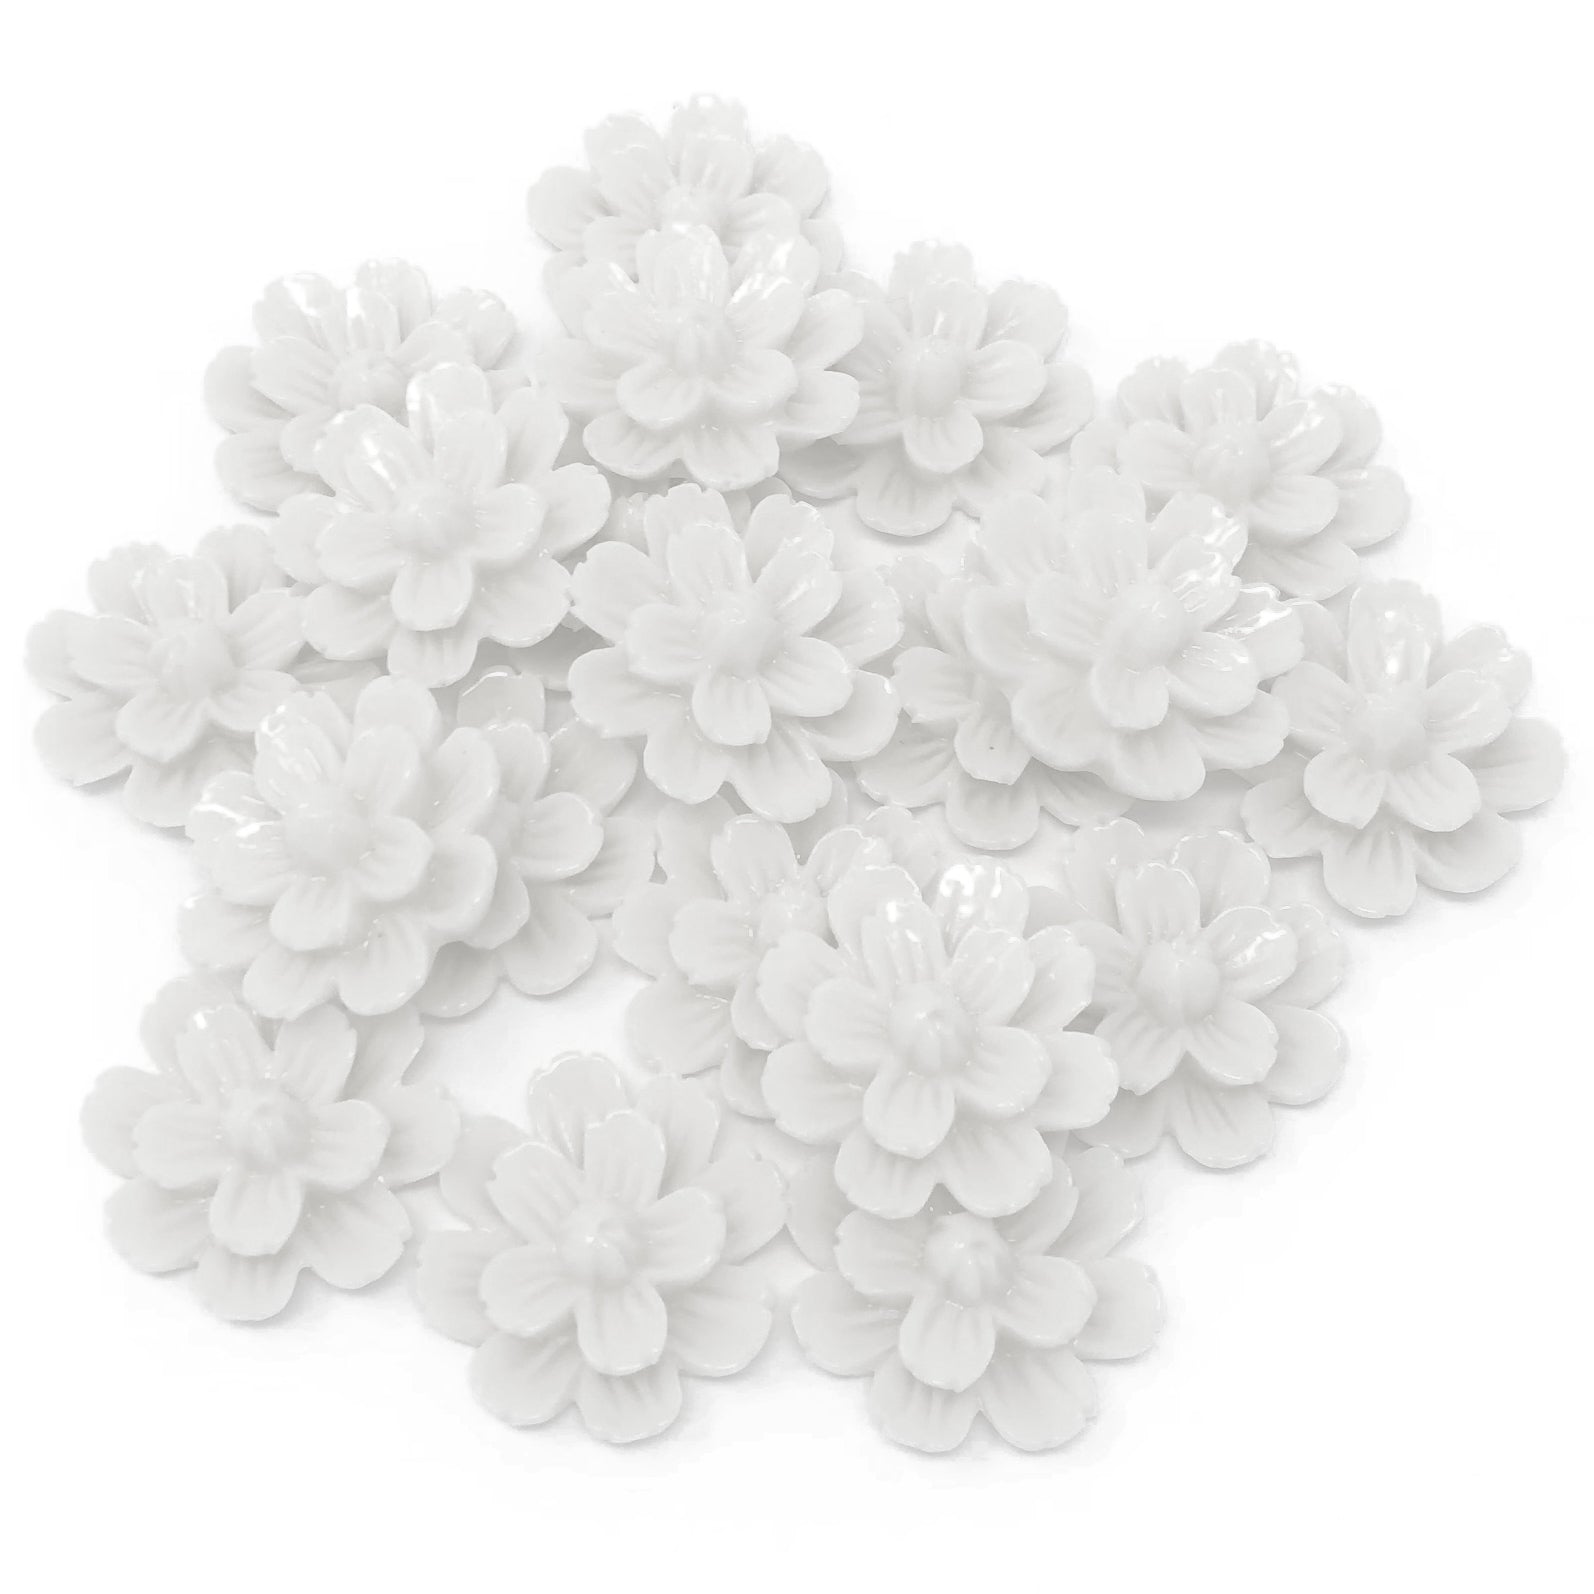 White 20mm Resin Flower Flatbacks - Pack of 20